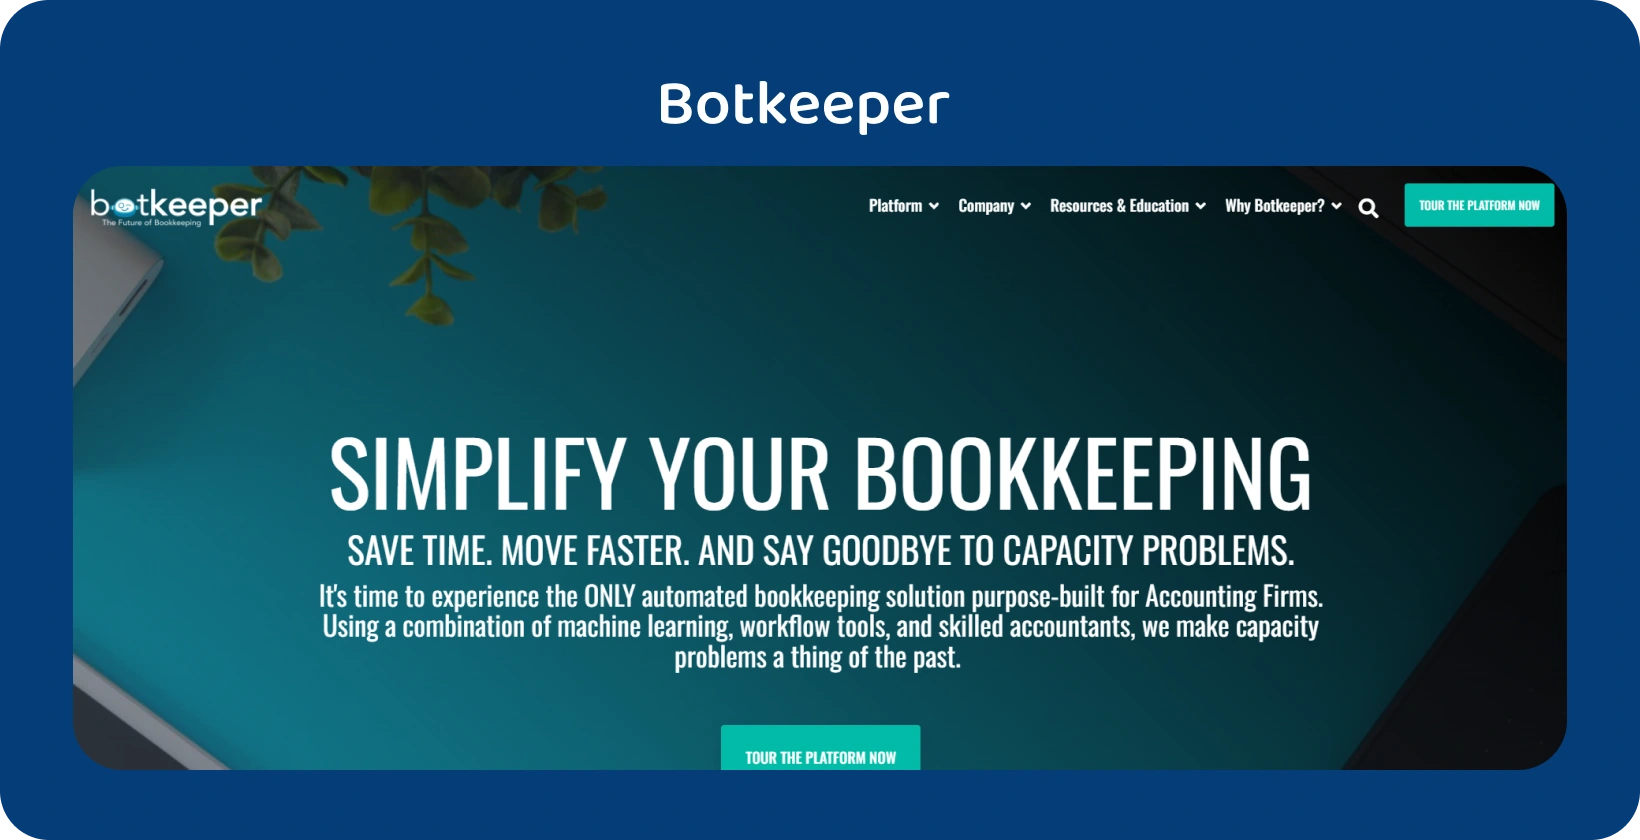 Die Homepage von Botkeeper hebt die Vereinfachung der Buchhaltung für Buchhalter durch seine Automatisierungstechnologie hervor.